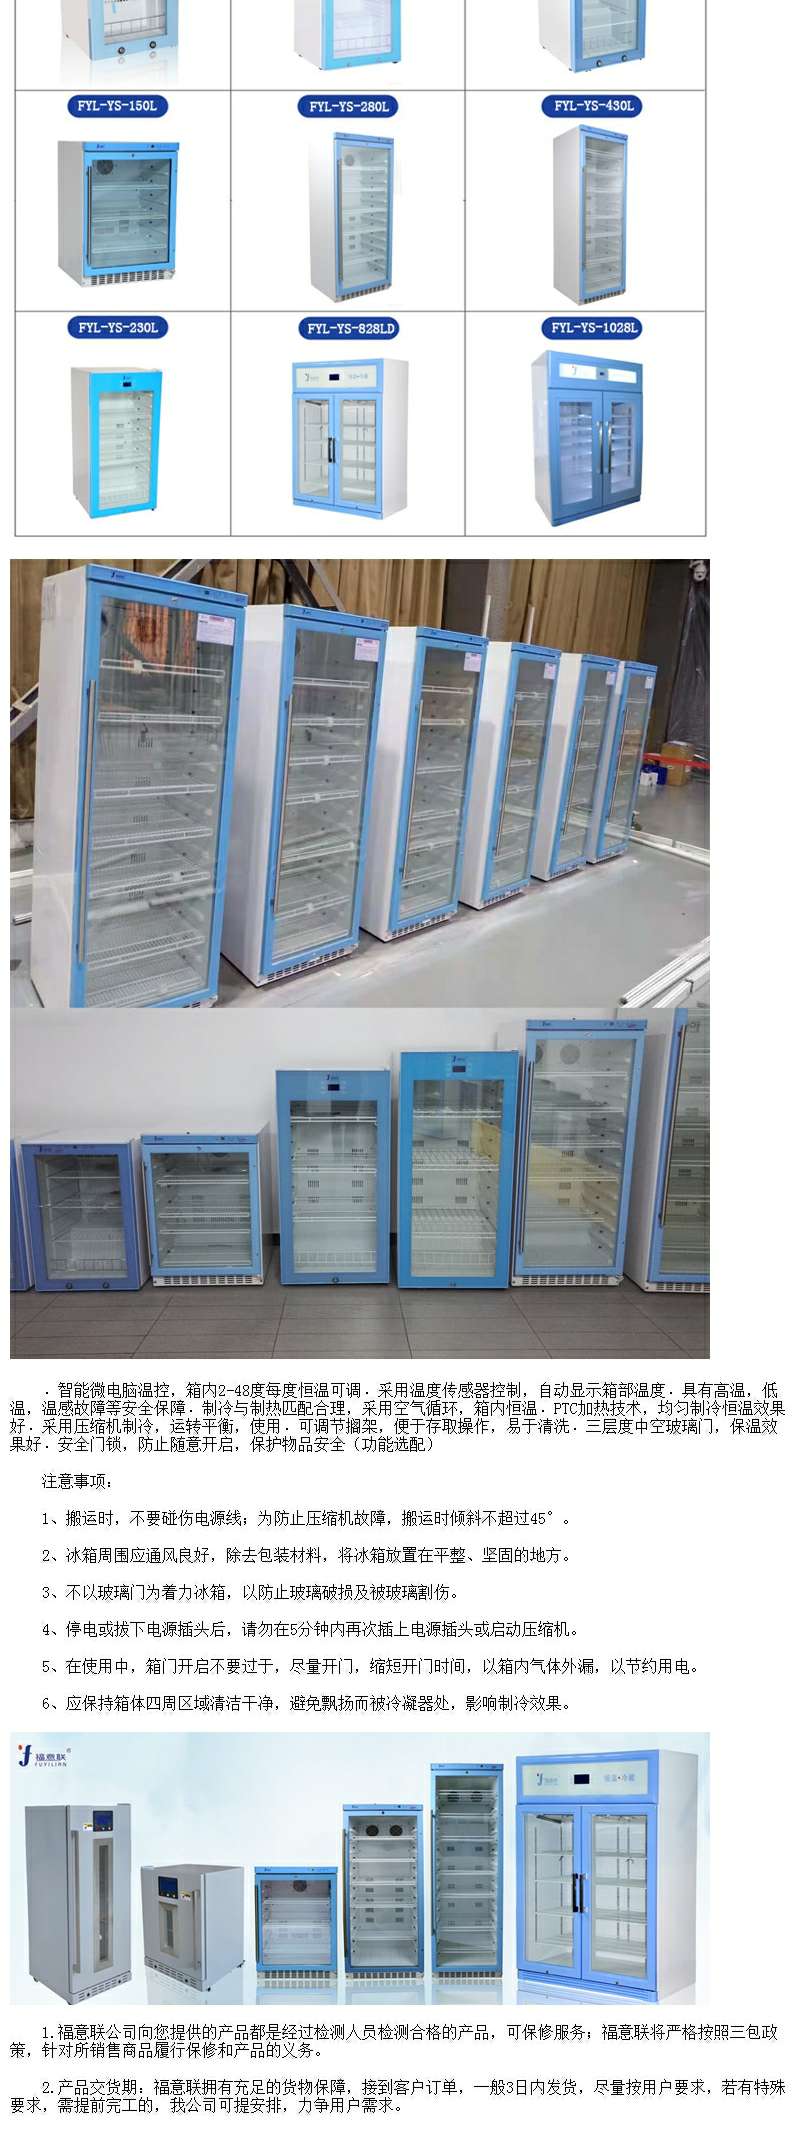 电子元器件15-25℃存储箱